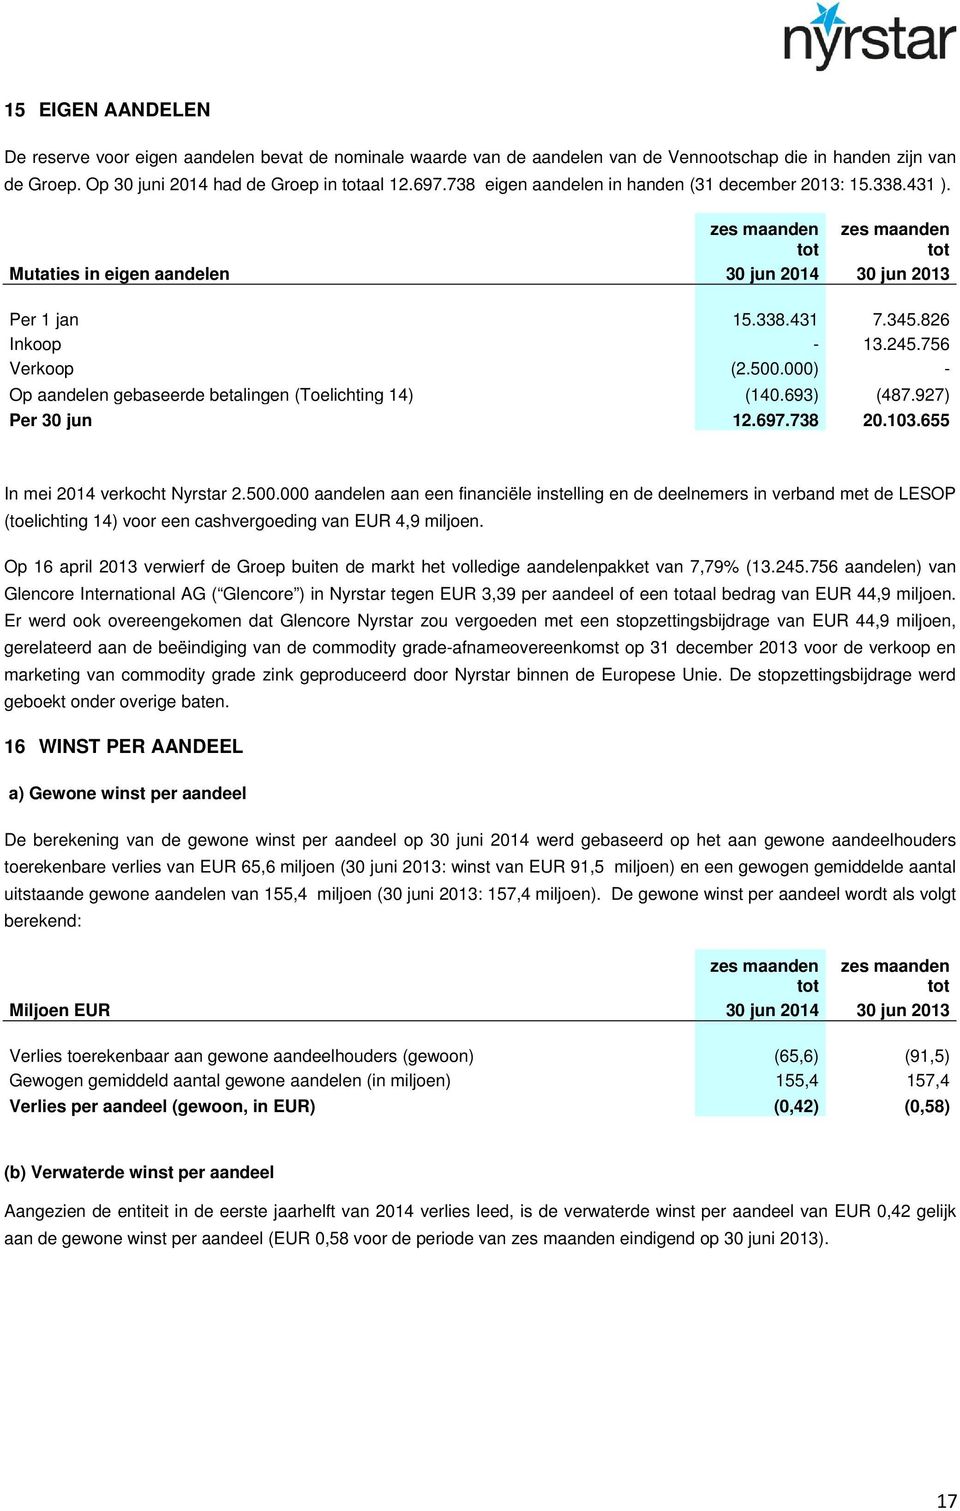 500.000) - Op aandelen gebaseerde betalingen (Toelichting 14) (140.693) (487.927) Per 30 jun 12.697.738 20.103.655 In mei 2014 verkocht Nyrstar 2.500.000 aandelen aan een financiële instelling en de deelnemers in verband met de LESOP (toelichting 14) voor een cashvergoeding van EUR 4,9 miljoen.